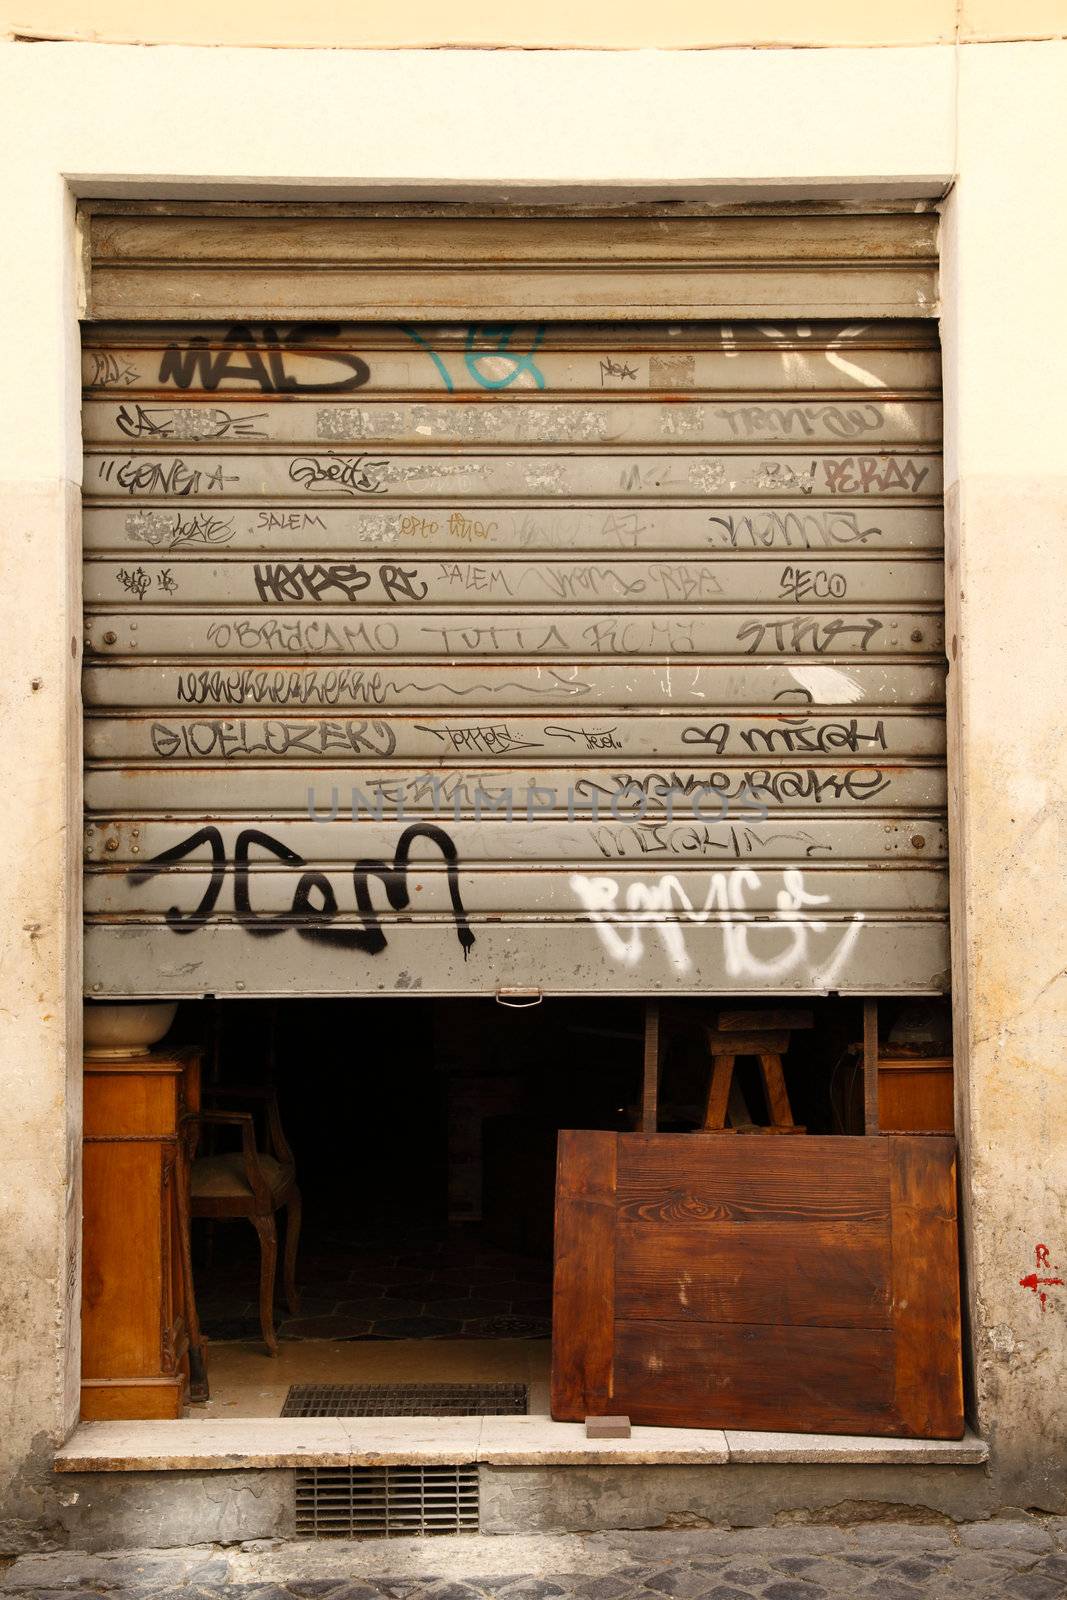 Graffiti Doors in Rome by shamtor